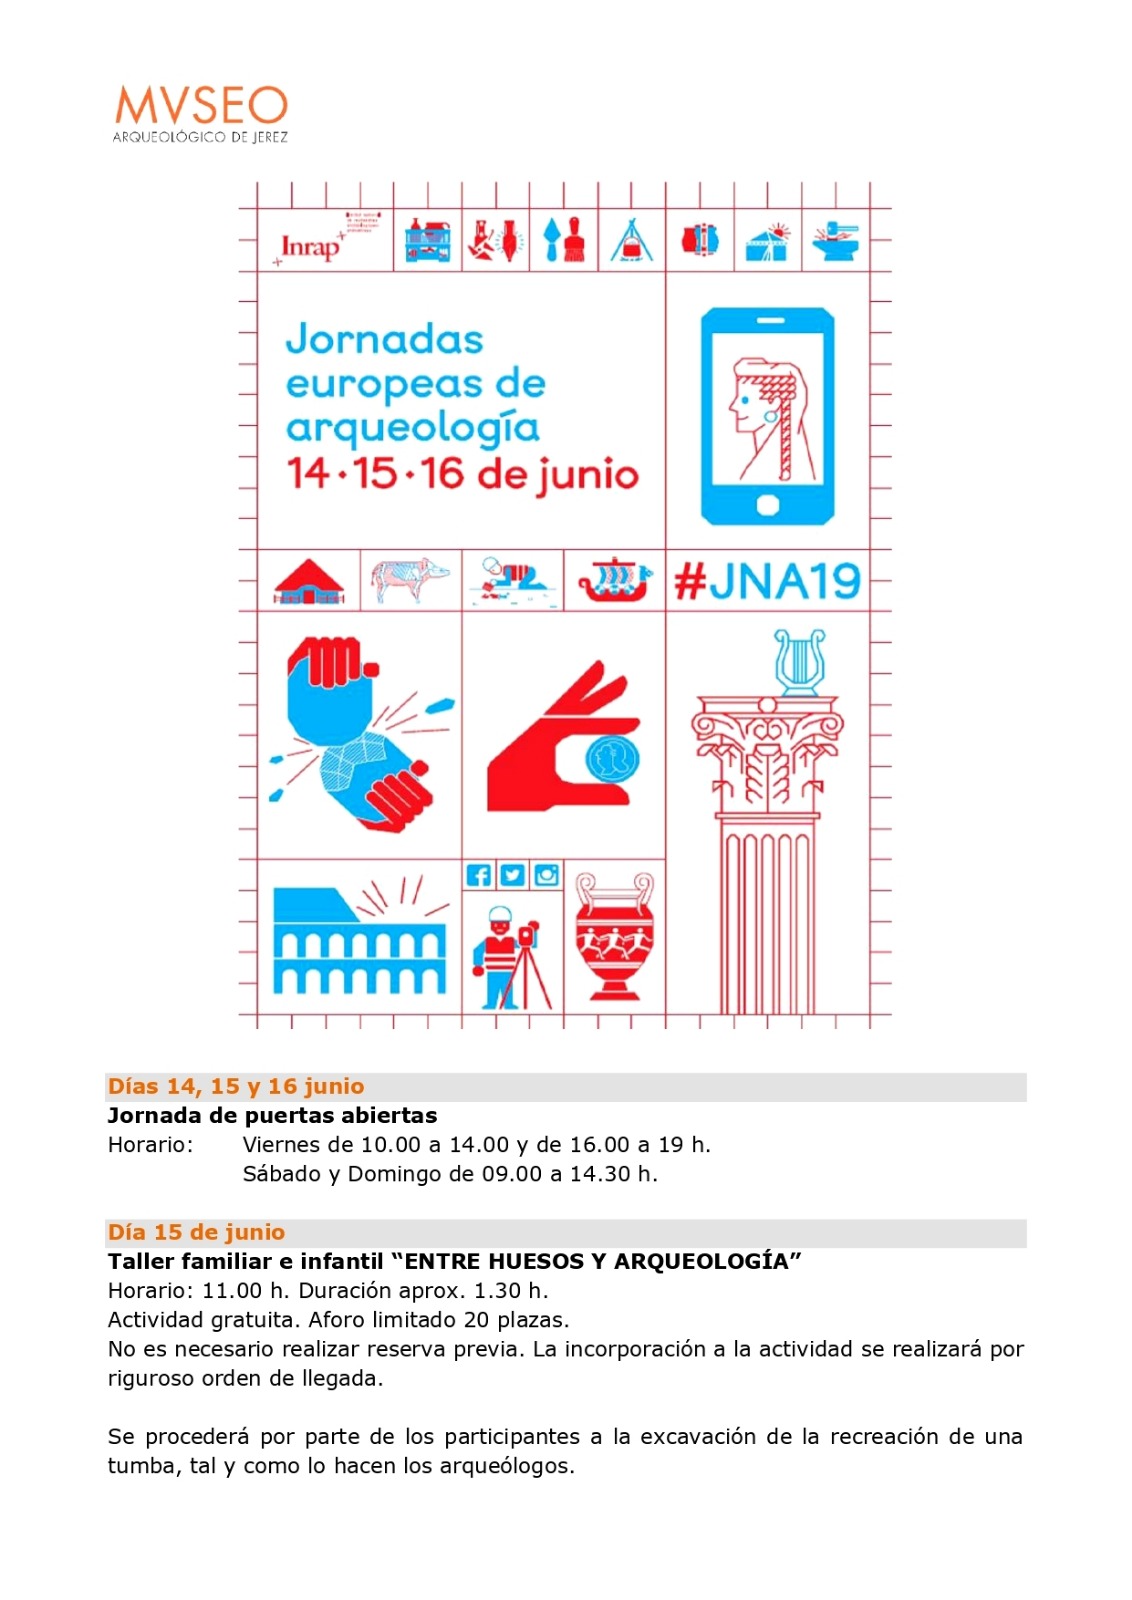 Sábado 15 de Junio 2019, "Taller Infantil y Familiar, Entre Huesos y Arqueología", Museo Arqueológico de Jerez 